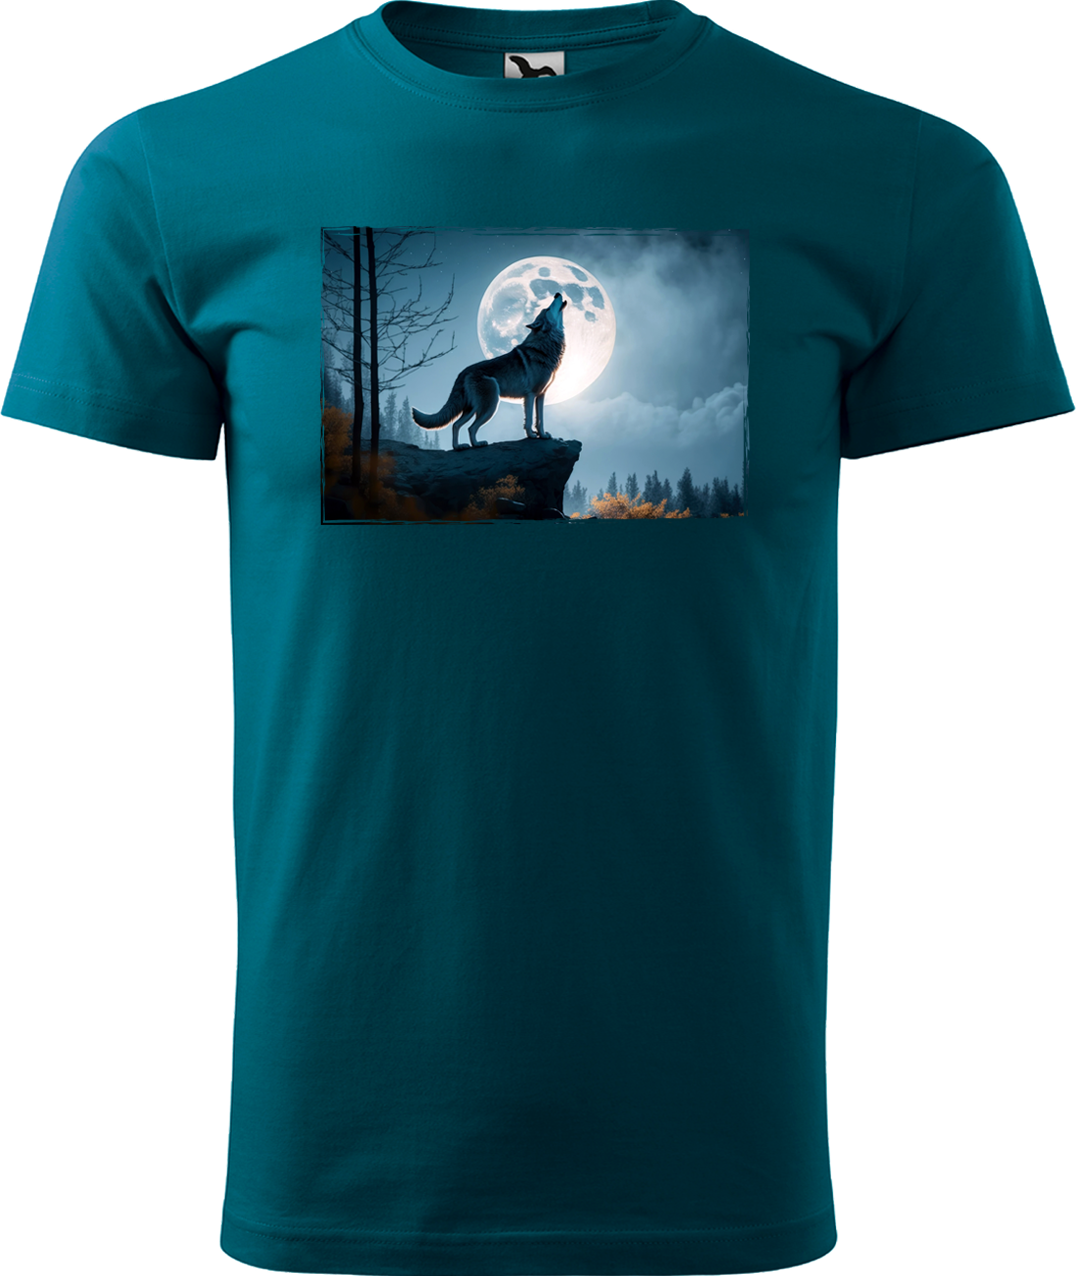 Pánské tričko s vlkem - Vyjící vlk Velikost: S, Barva: Petrolejová (93)